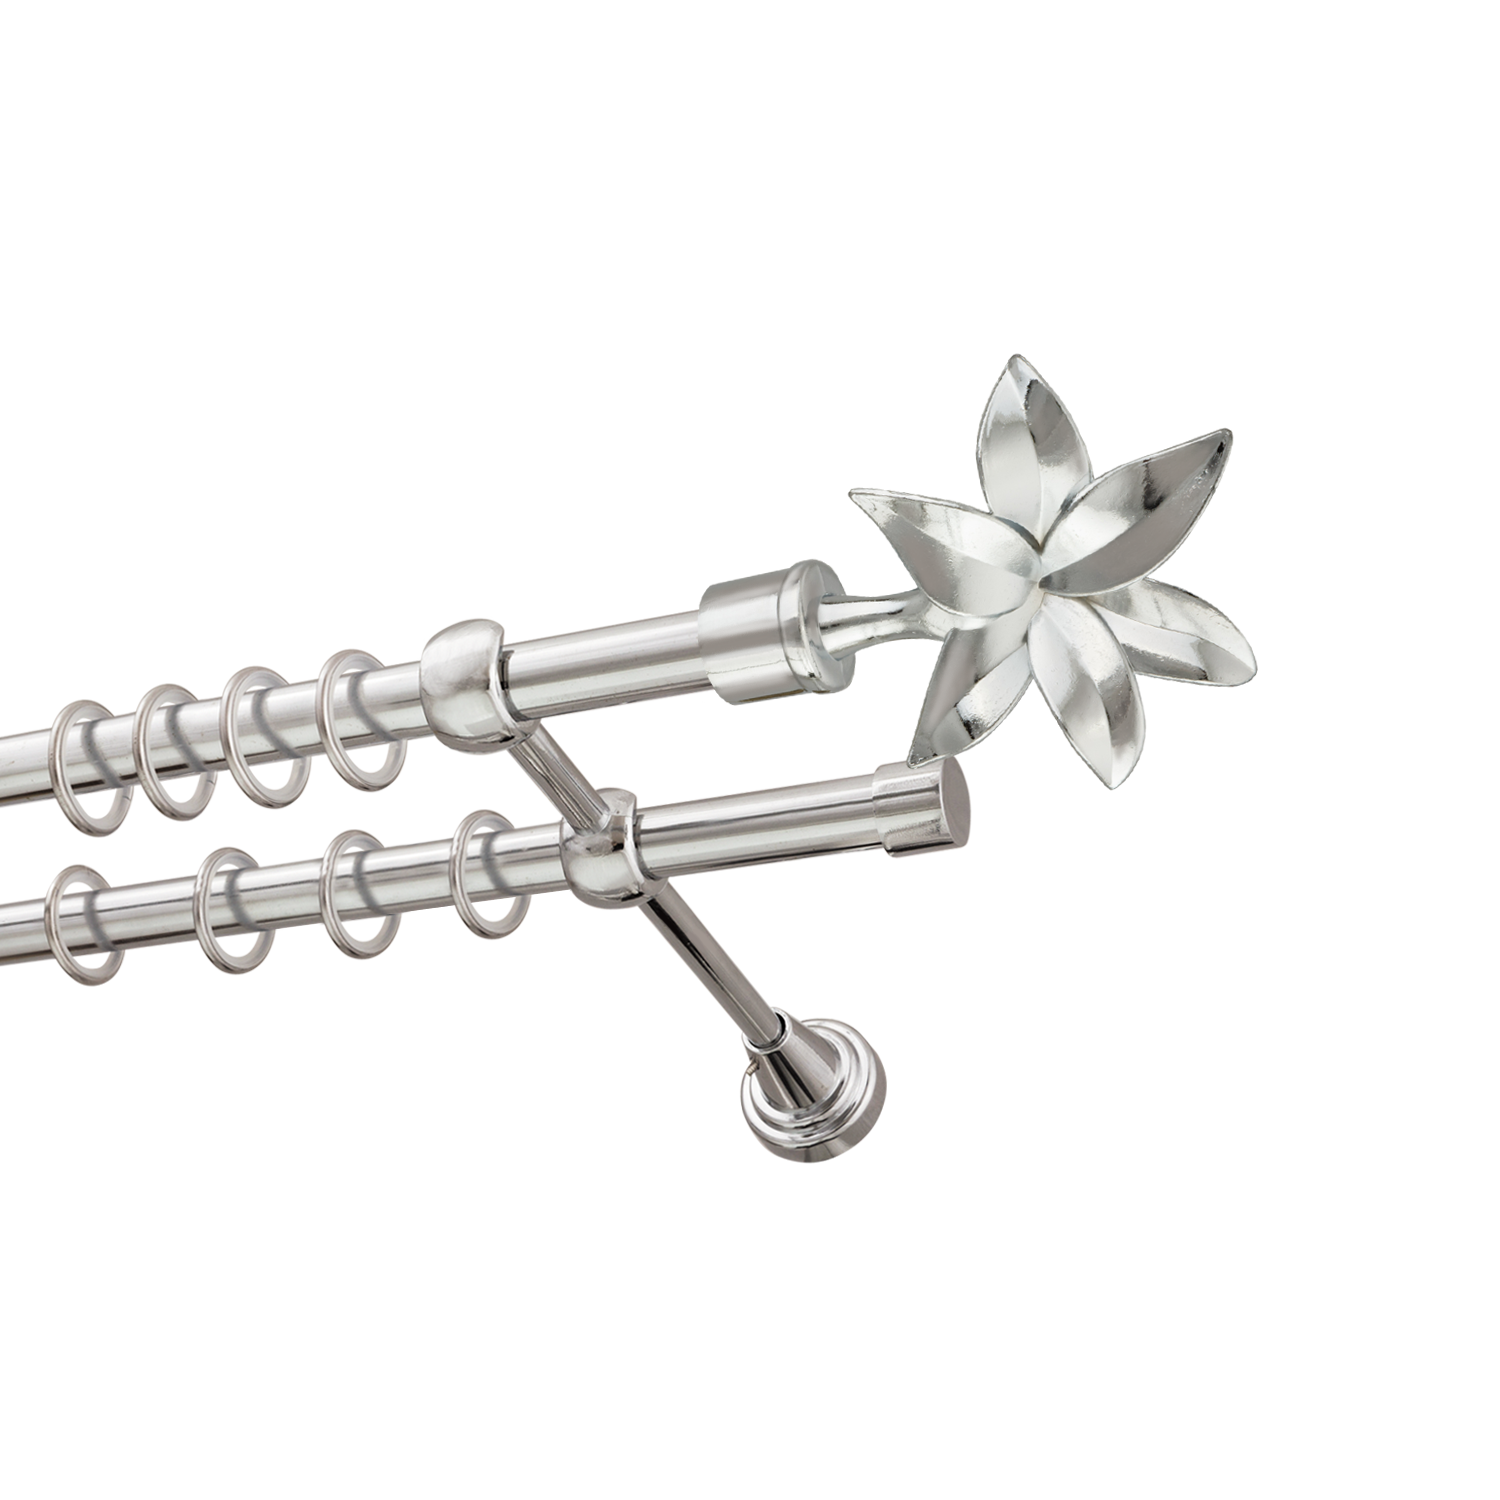 Металлический карниз для штор Магнолия, двухрядный 16/16 мм, серебро, гладкая штанга, длина 300 см - фото Wikidecor.ru